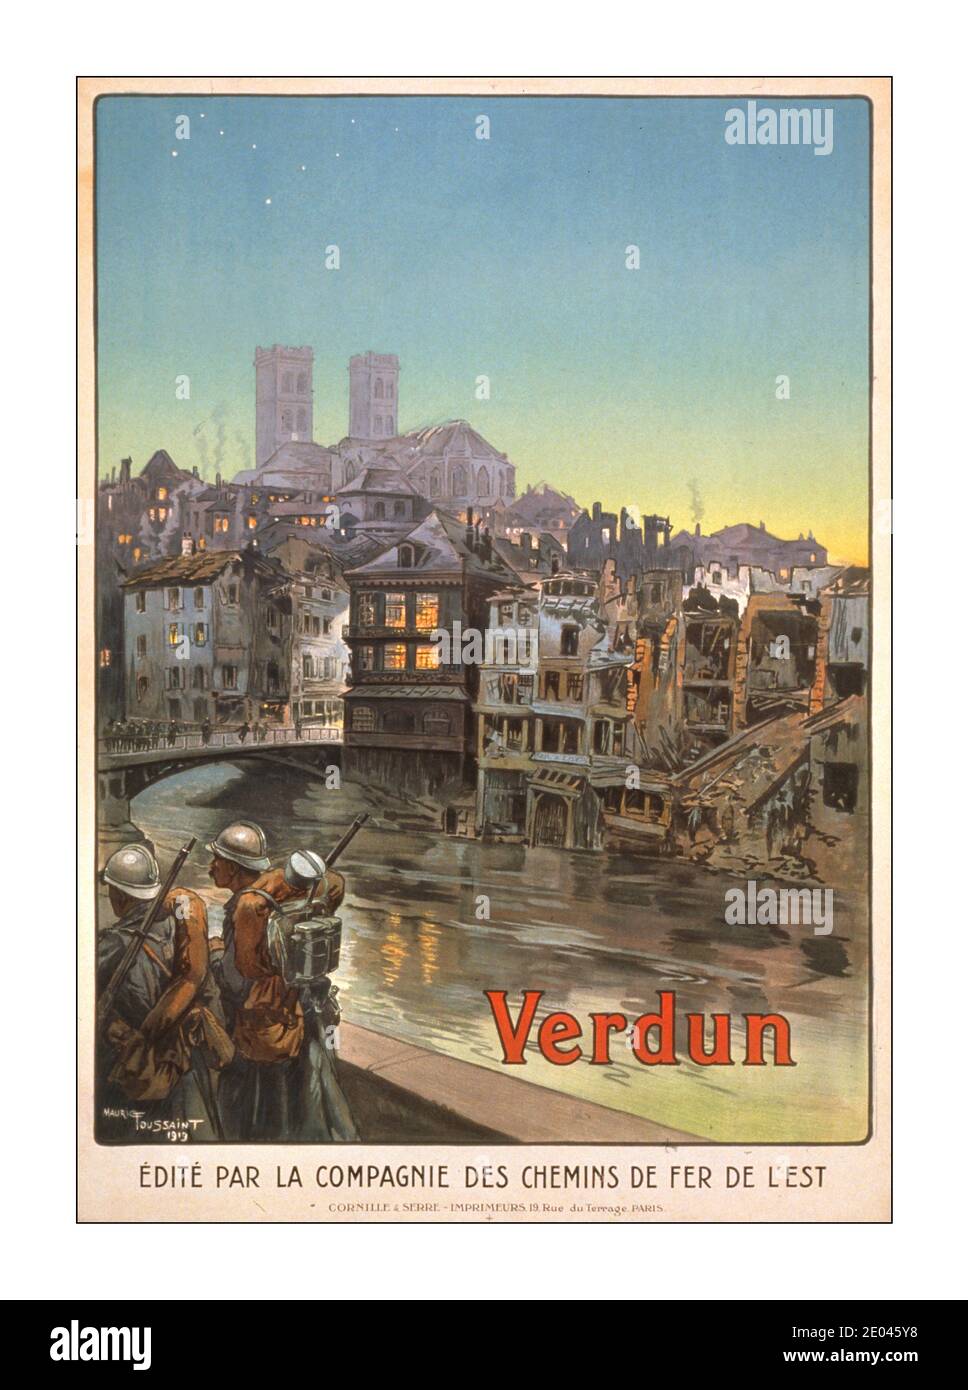 WW1 « Verdun » Poster de propagande de voyage les soldats marchent au bord d'une rivière et sur un pont dans un Verdun bombardé. La bataille de Verdun en 1916 fut la bataille la plus longue et la plus coûteuse en termes de vies, de la guerre. Toussaint, Maurice, 1882-, artiste, Paris : Cornille et serre, [1919] - Guerre mondiale, 1914-1918--personnel militaire--Français - Guerre mondiale, 1914-1918--destruction et pillage--France--lithographies Verdun--couleur--1910-1920. Affiches de guerre--Français--1910-1920. - signé : Mauric Toussaint, 1919. Edité par la Compagnie des chemins de fer de l'est. France Banque D'Images